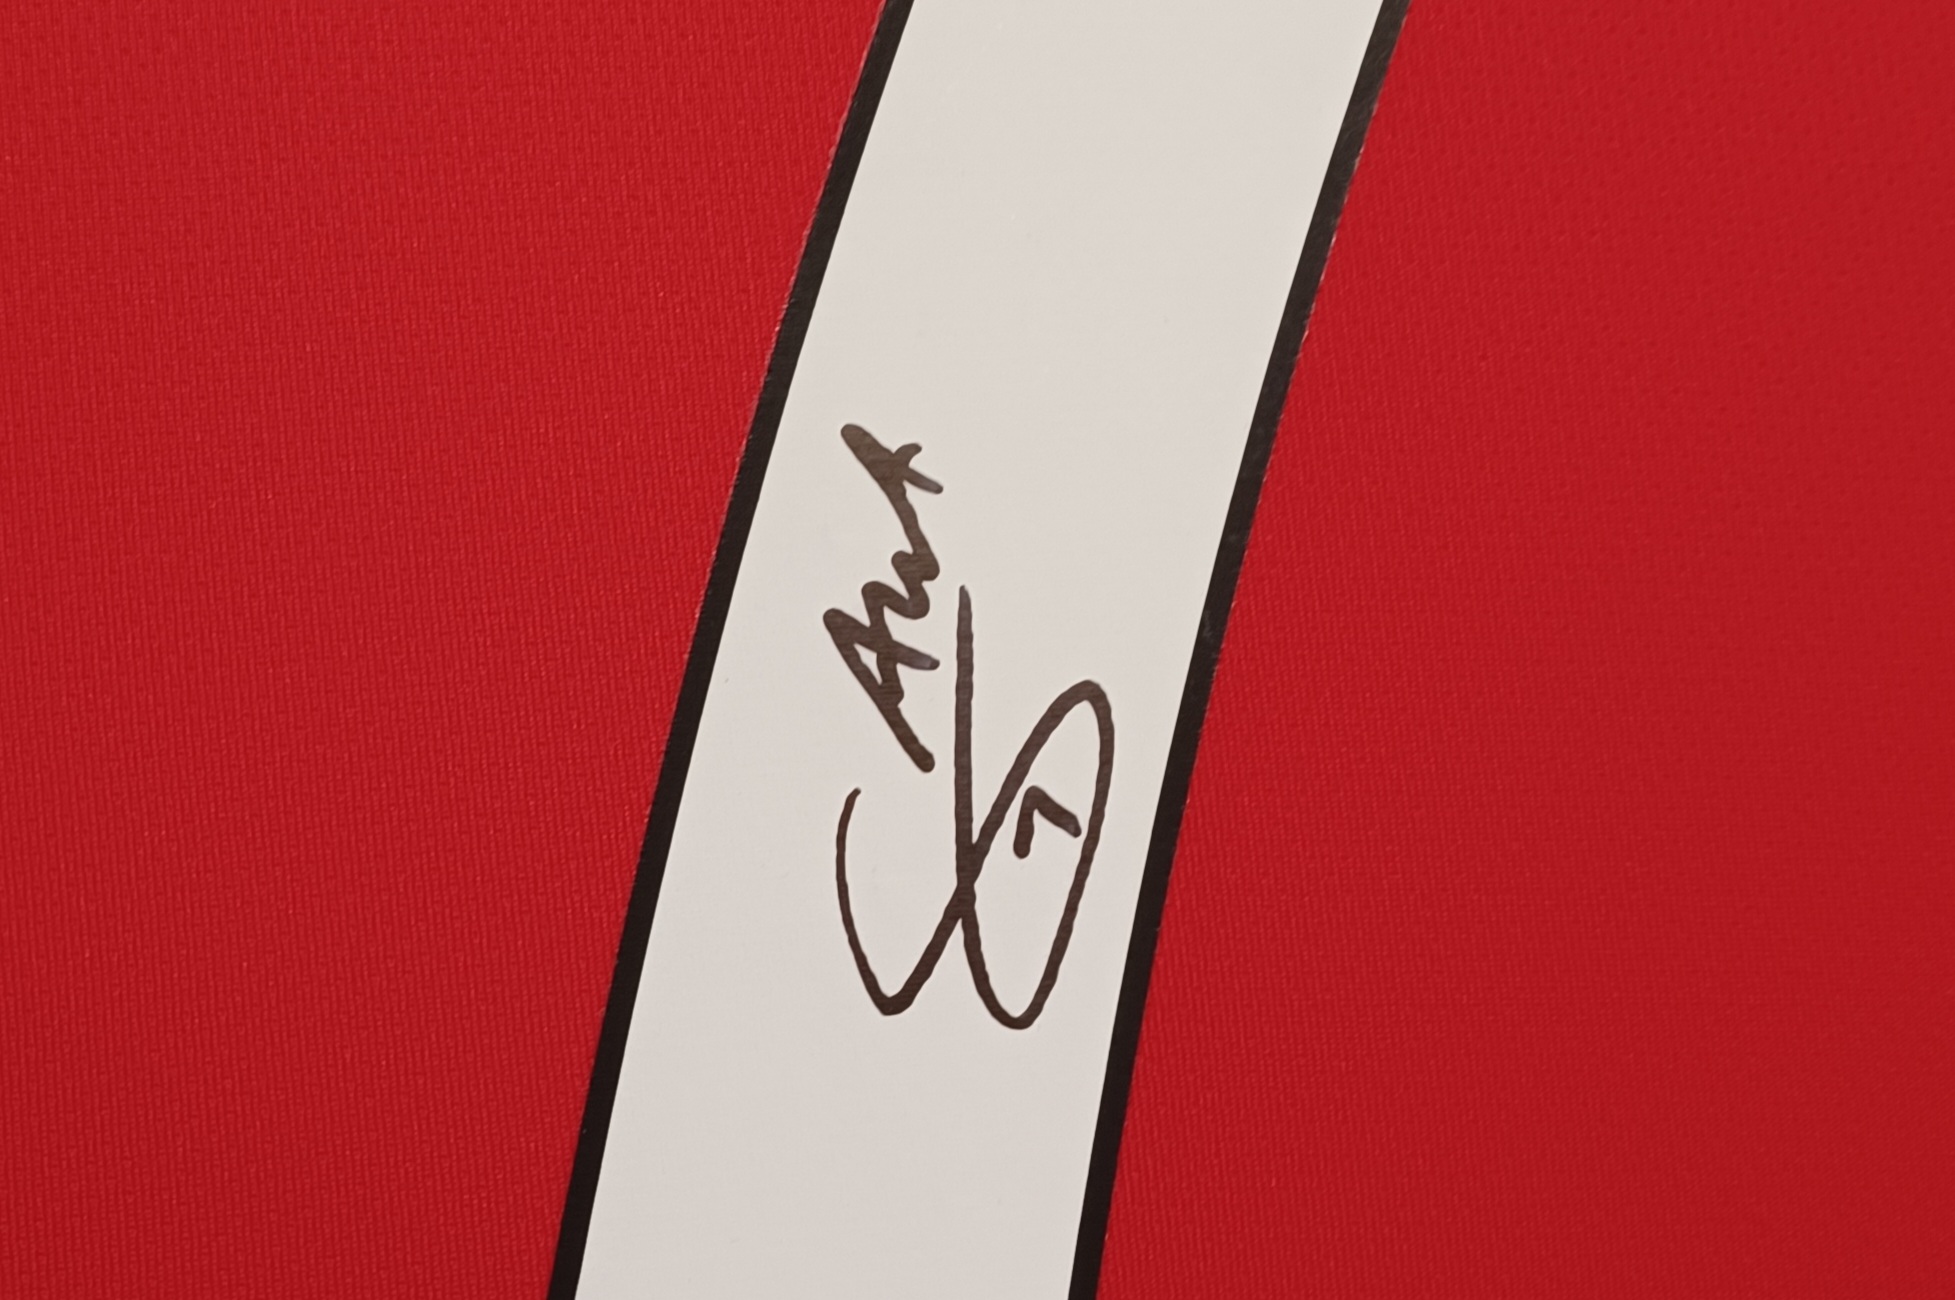 Bukayo Saka of Arsenal Signed Football Shirt | Signed Memorabila Shop ...